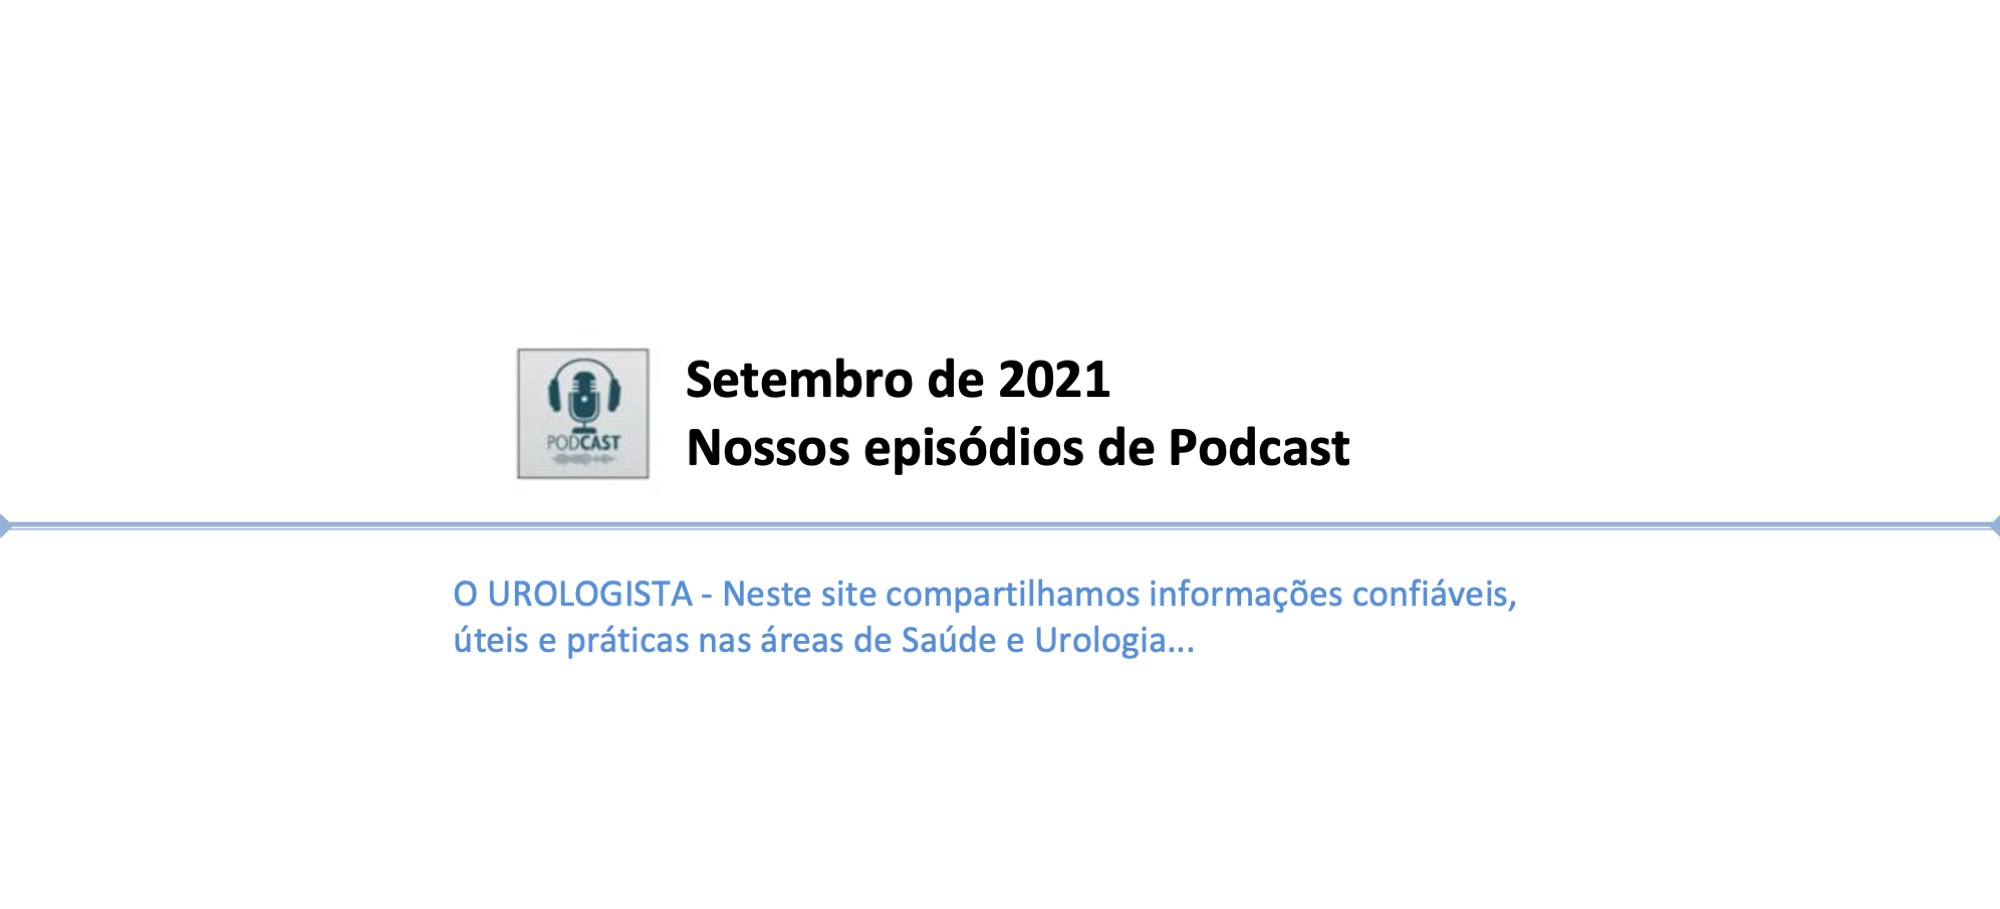 Podcast O Urologista - Episódios de setembro de 2021